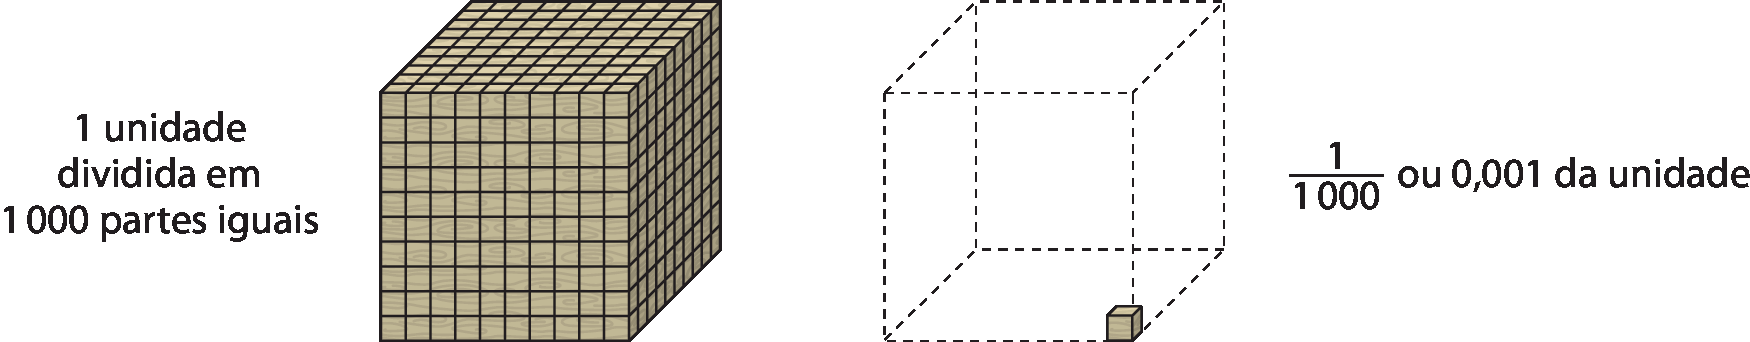 Figura geométrica. Cubo do mesmo tamanho do cubo maior do material dourado formado por 1 mil cubos menores de unidade empilhados. A esquerda do cubo está o texto: 1 unidade dividia em 1mil partes iguais. 
A direita do cubo está 1 cubo menor e linhas tracejadas indicando onde seriam as arestas do cubo maior. A direita está o texto: fração 1 sobre 1 mil ou 0 vírgula 0 0 1 da unidade.